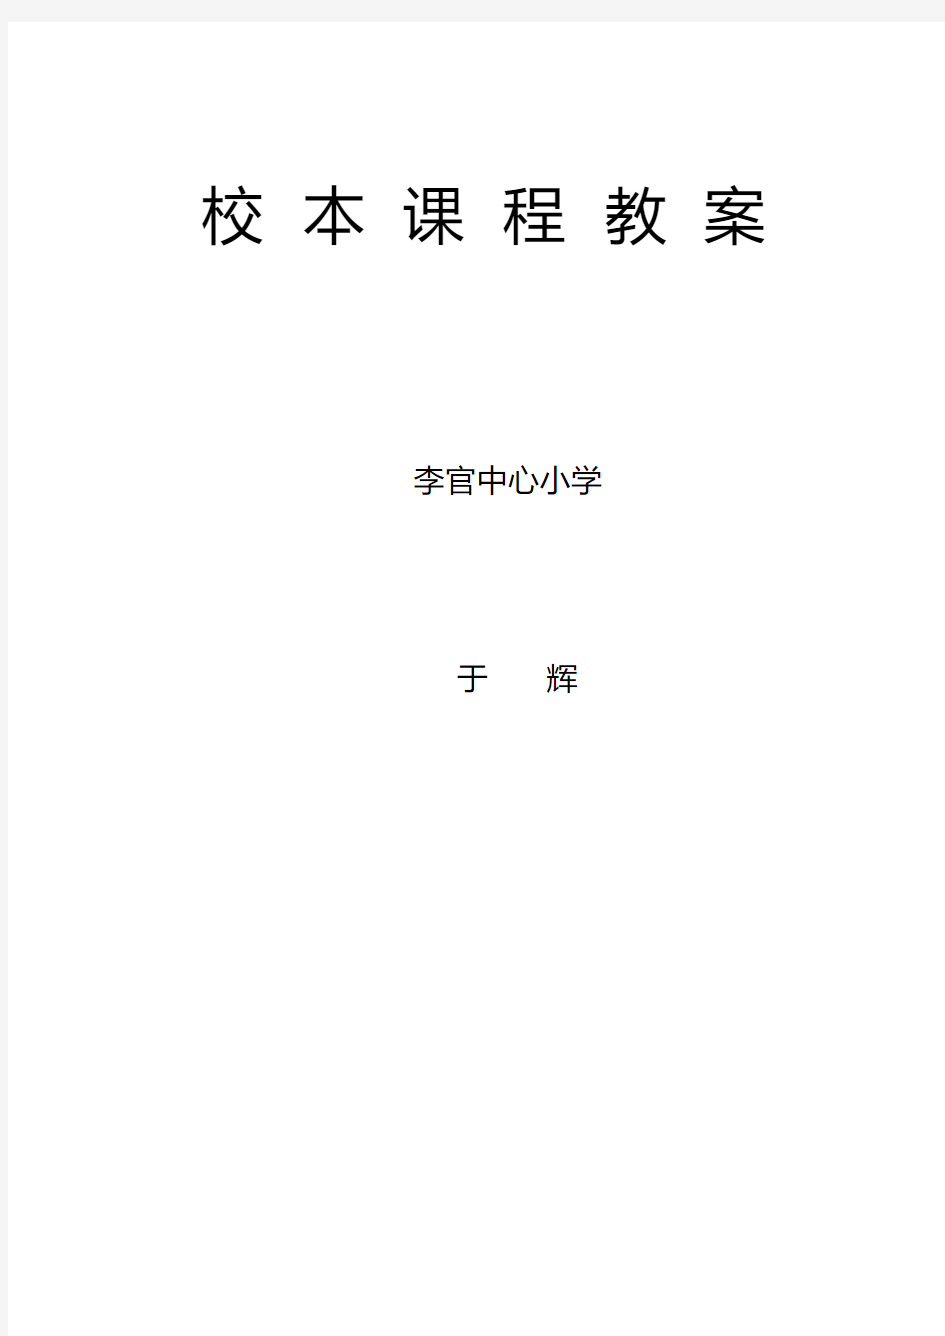 信息技术校本课程纲要.pdf